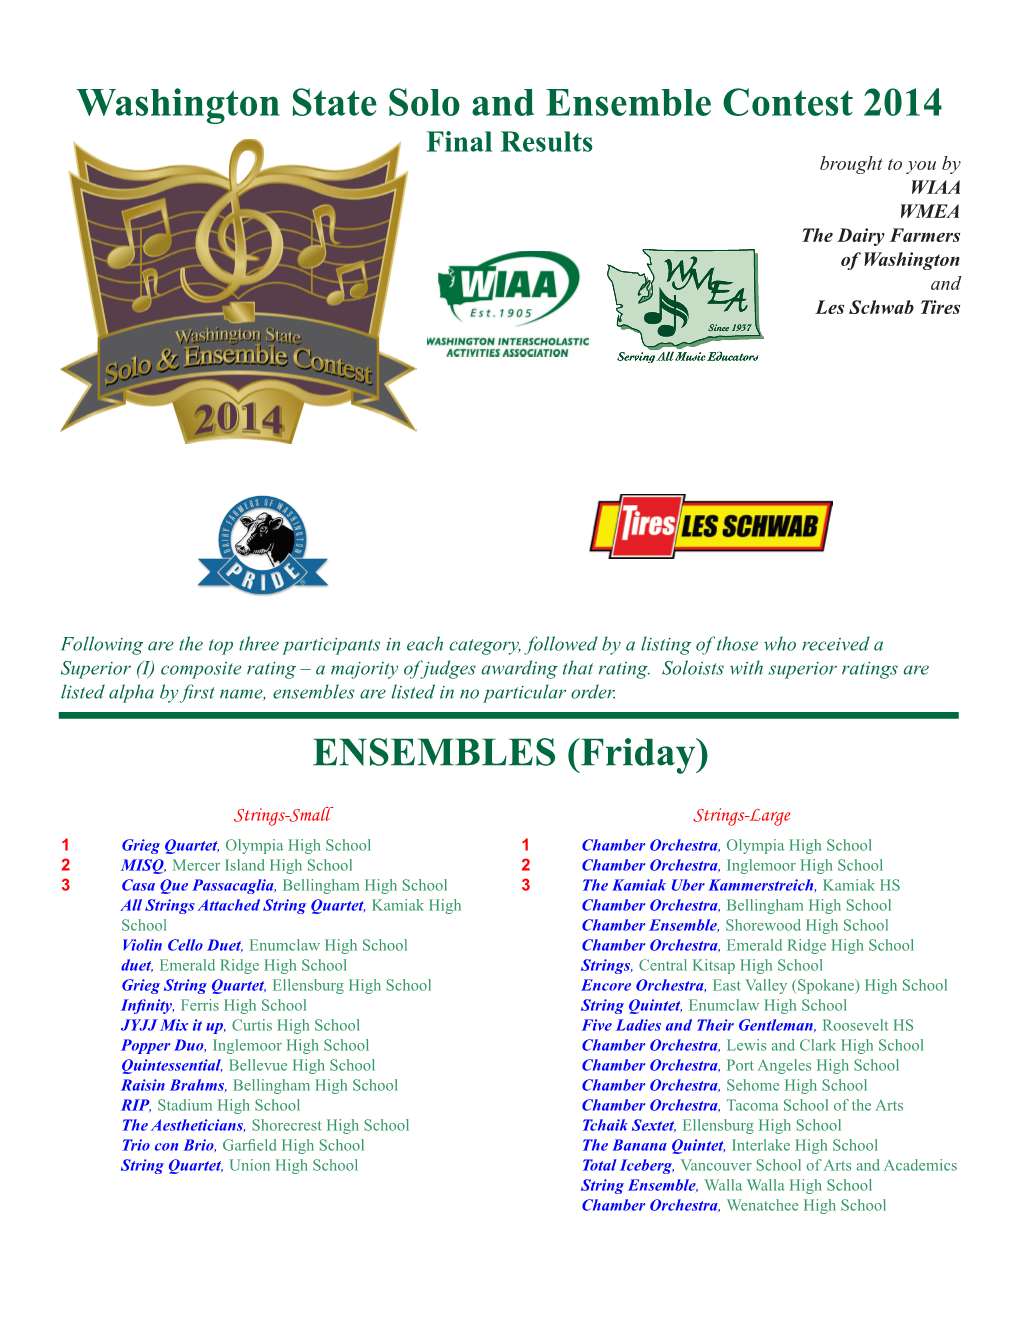 Washington State Solo and Ensemble Contest 2014 ENSEMBLES